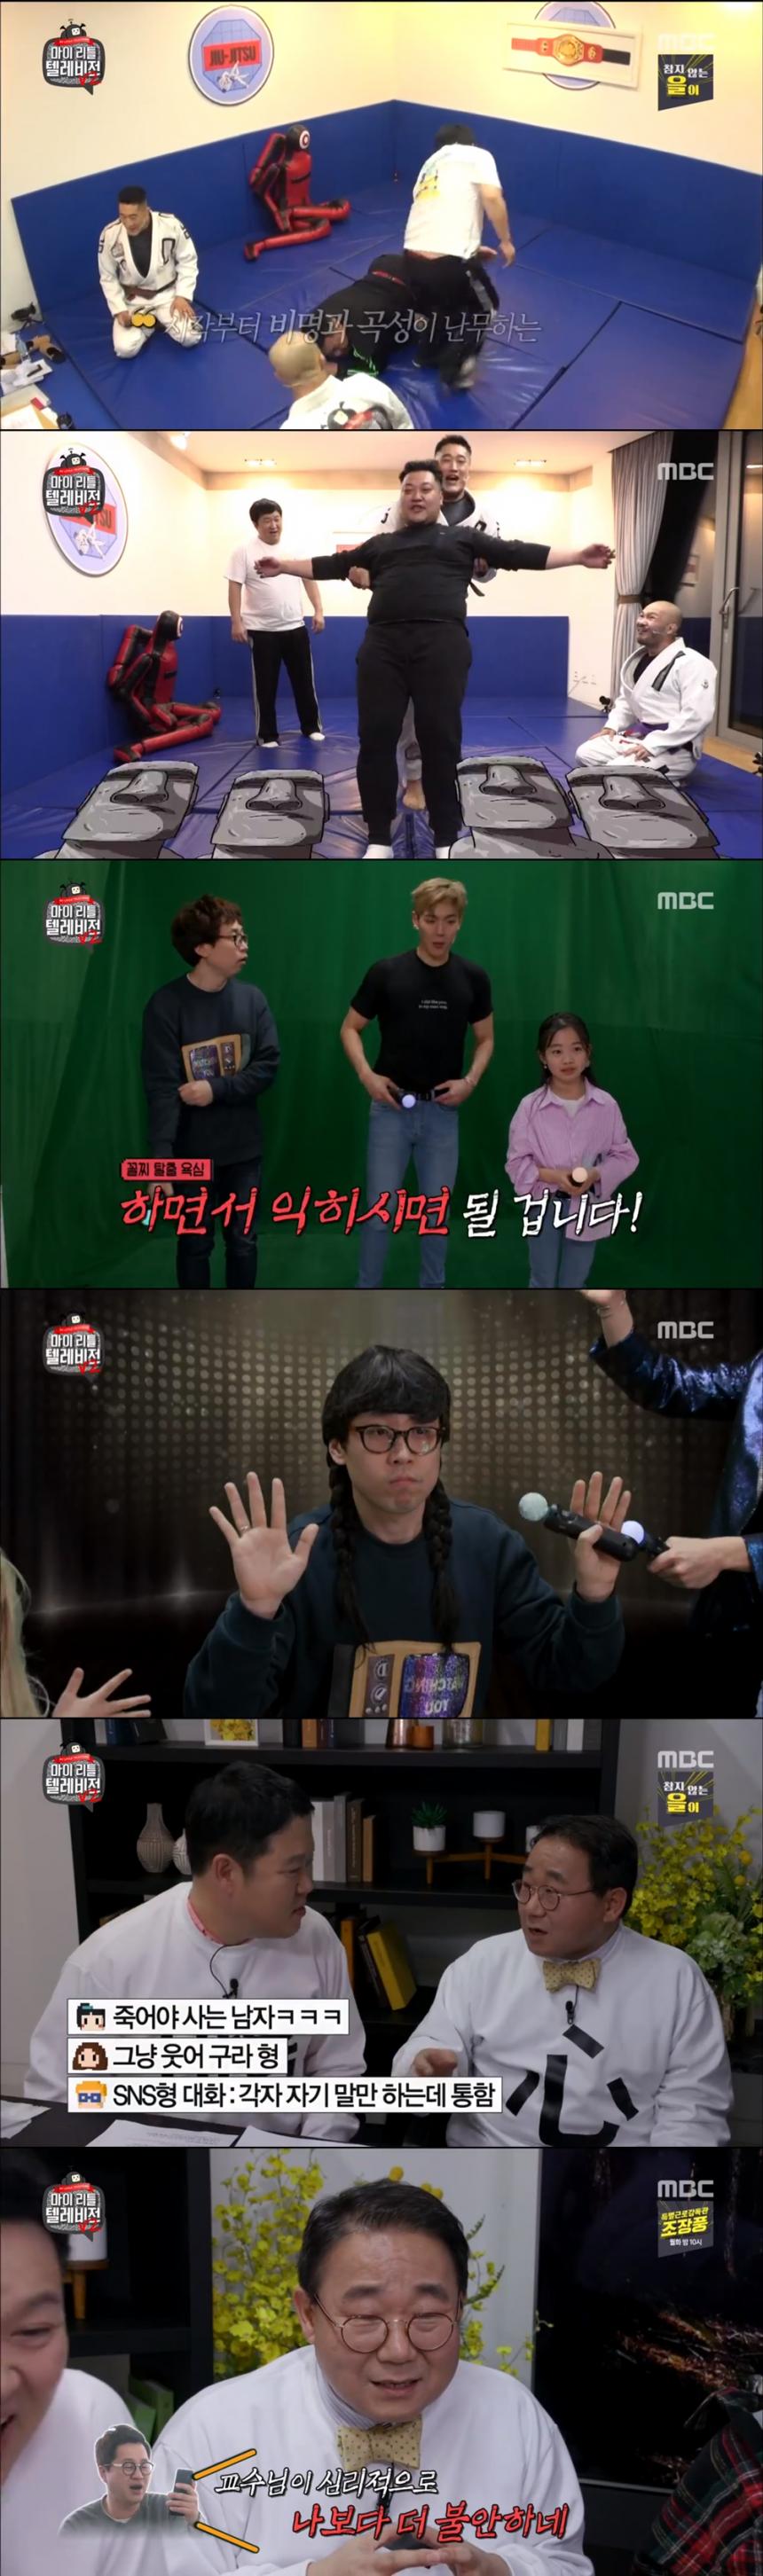 MBC '마이 리틀 텔레비전 V2' 방송 캡쳐